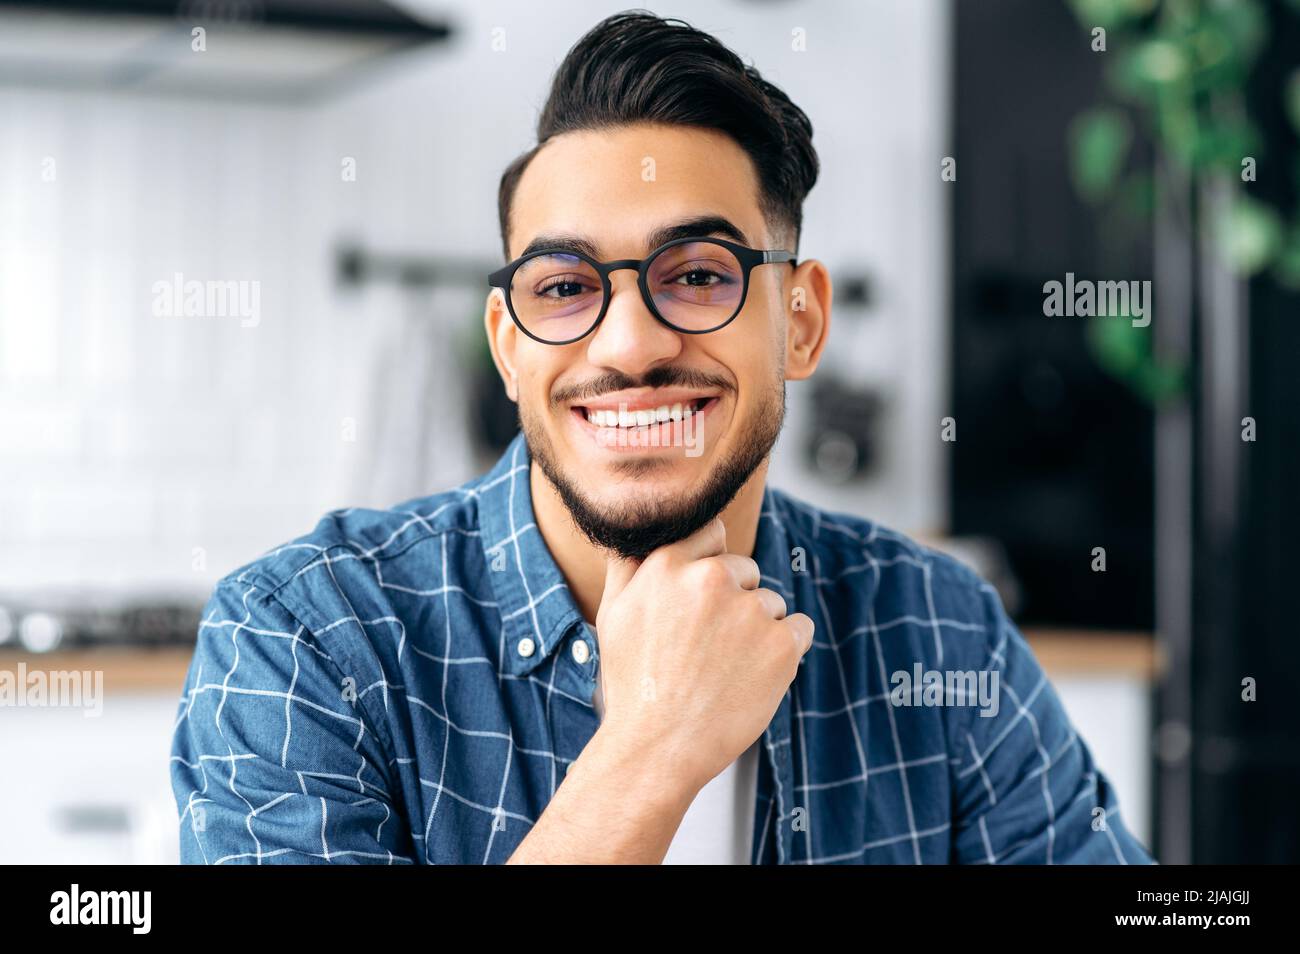 Nahaufnahme eines attraktiven, positiven arabischen oder indischen jungen Mannes mit Brille, Freiberufler oder Student, in legerer Kleidung, mit perfekten weißen Zähnen, der mit einem fröhlichen Lächeln auf die Kamera blickt Stockfoto